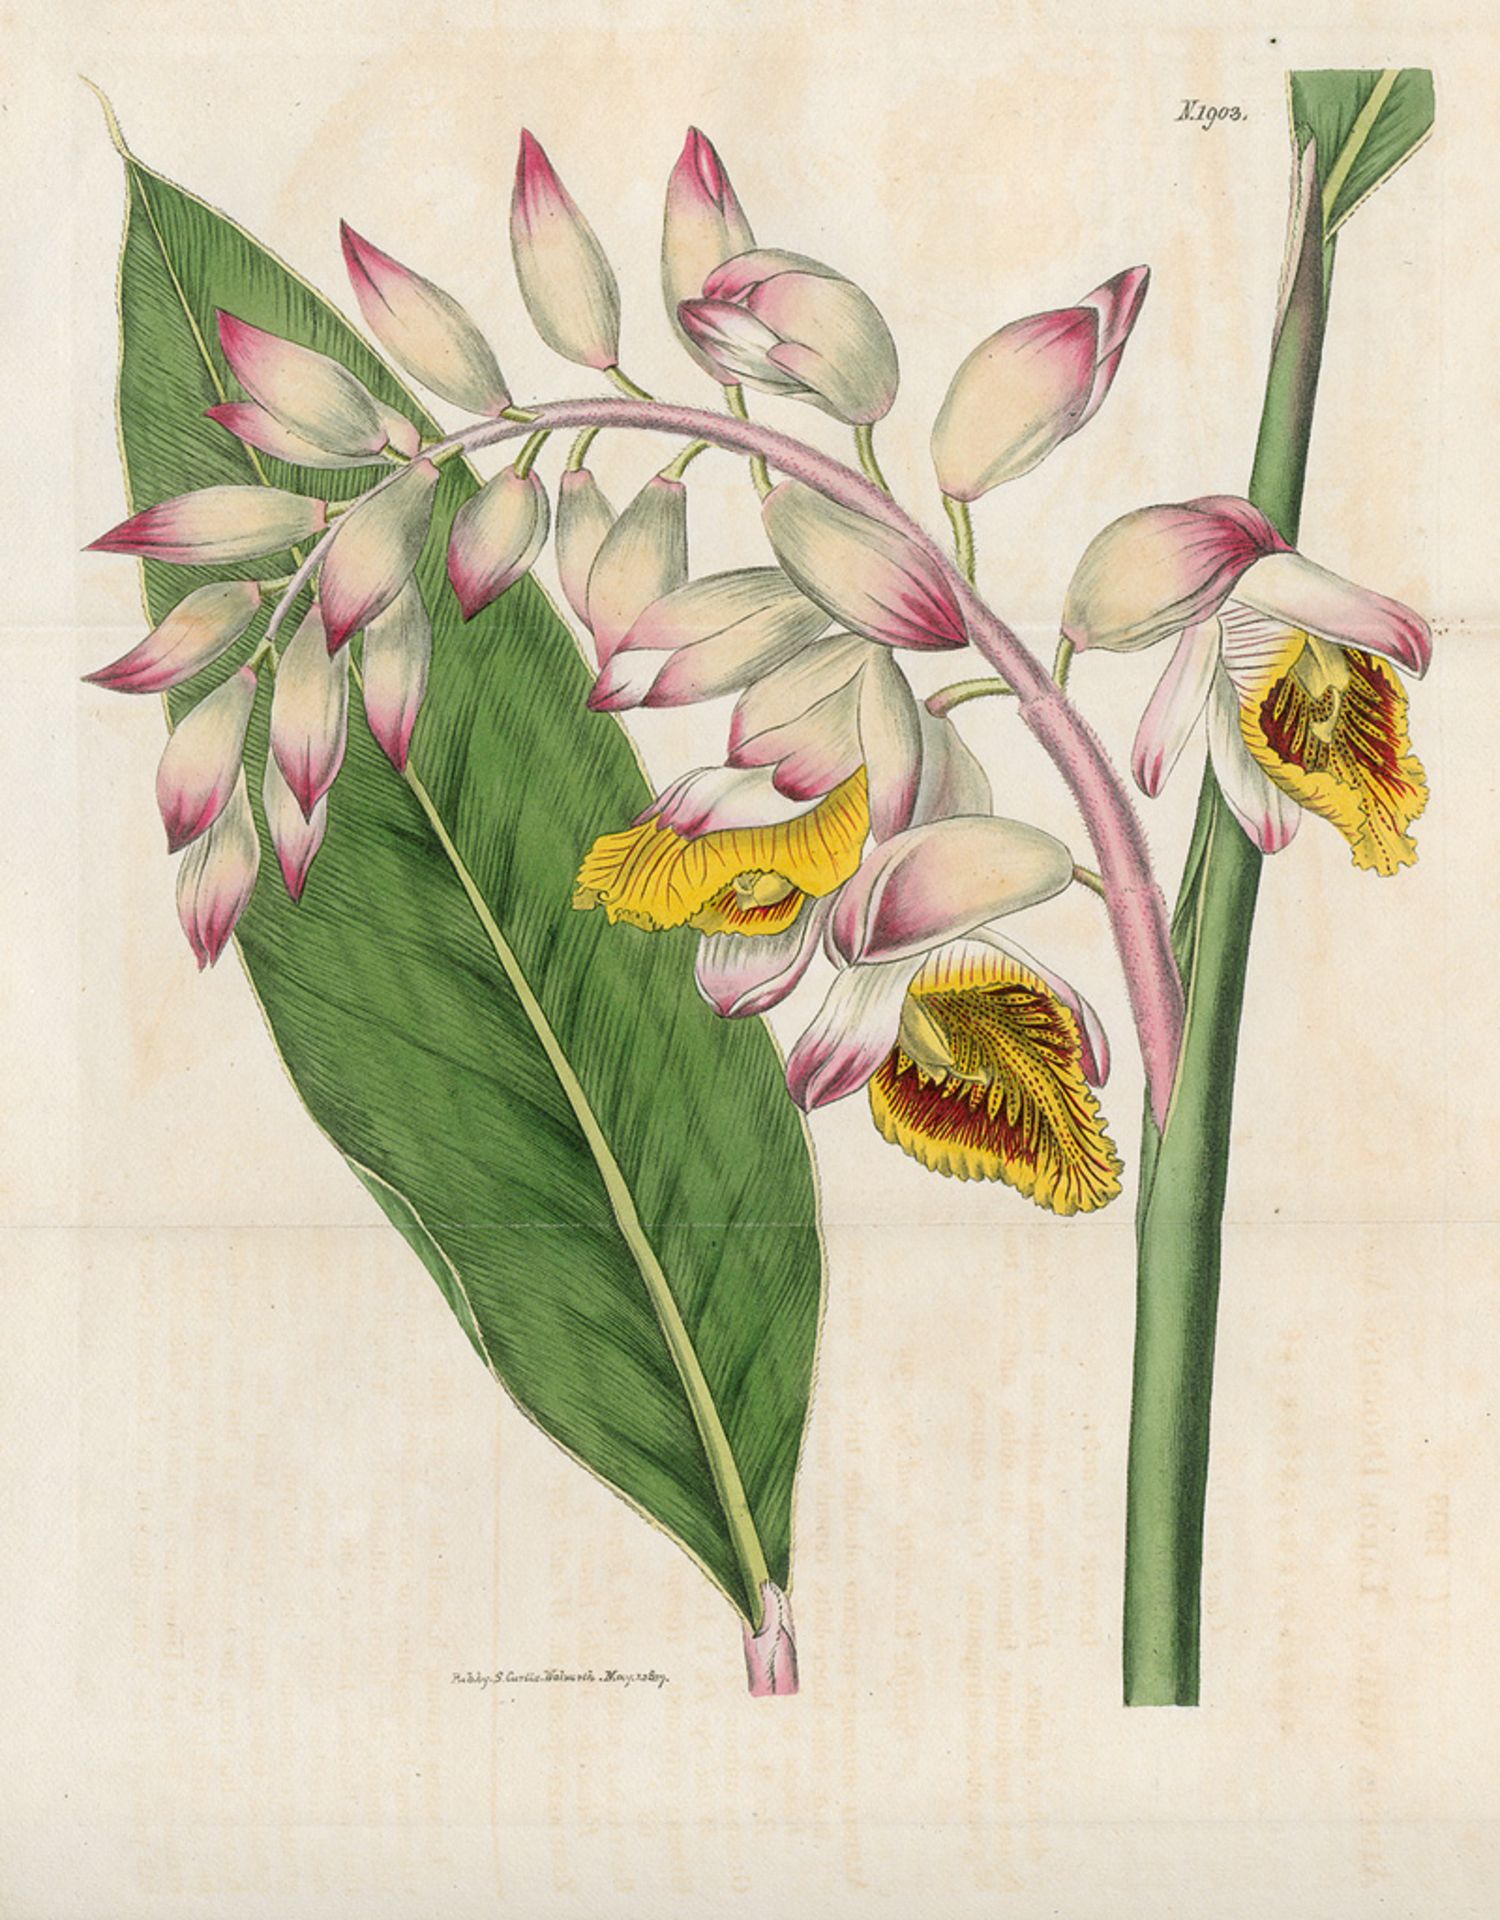 Curtis, William: The Botanical Magazine or Flower-Garden displayed